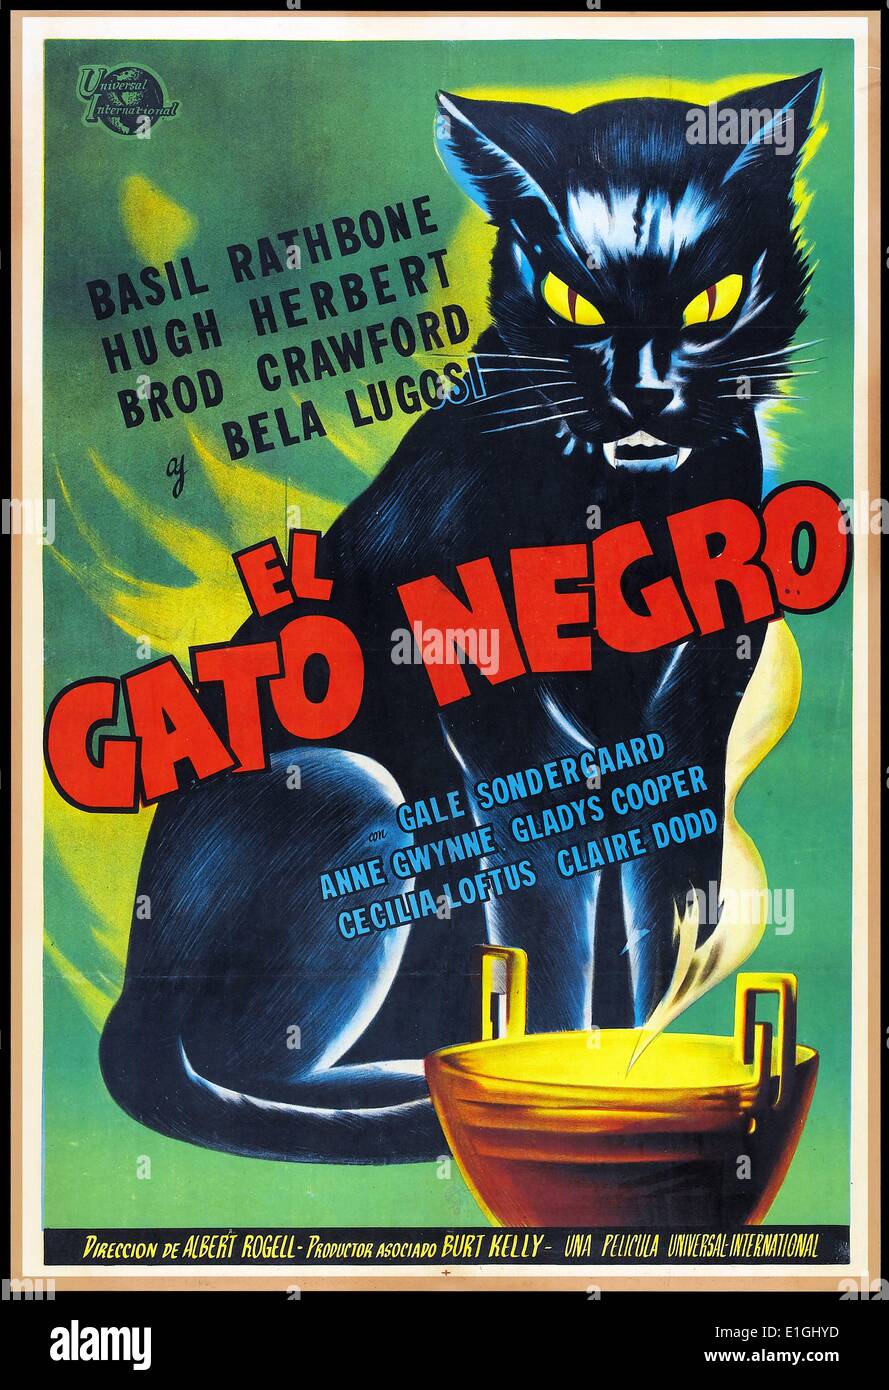 El Gato Negro) película española cartel para el gato negro de una película  de 1941 basada en el cuento de Edgar Allan Poe. La comedia/película de  terror fue dirigida por Albert S.